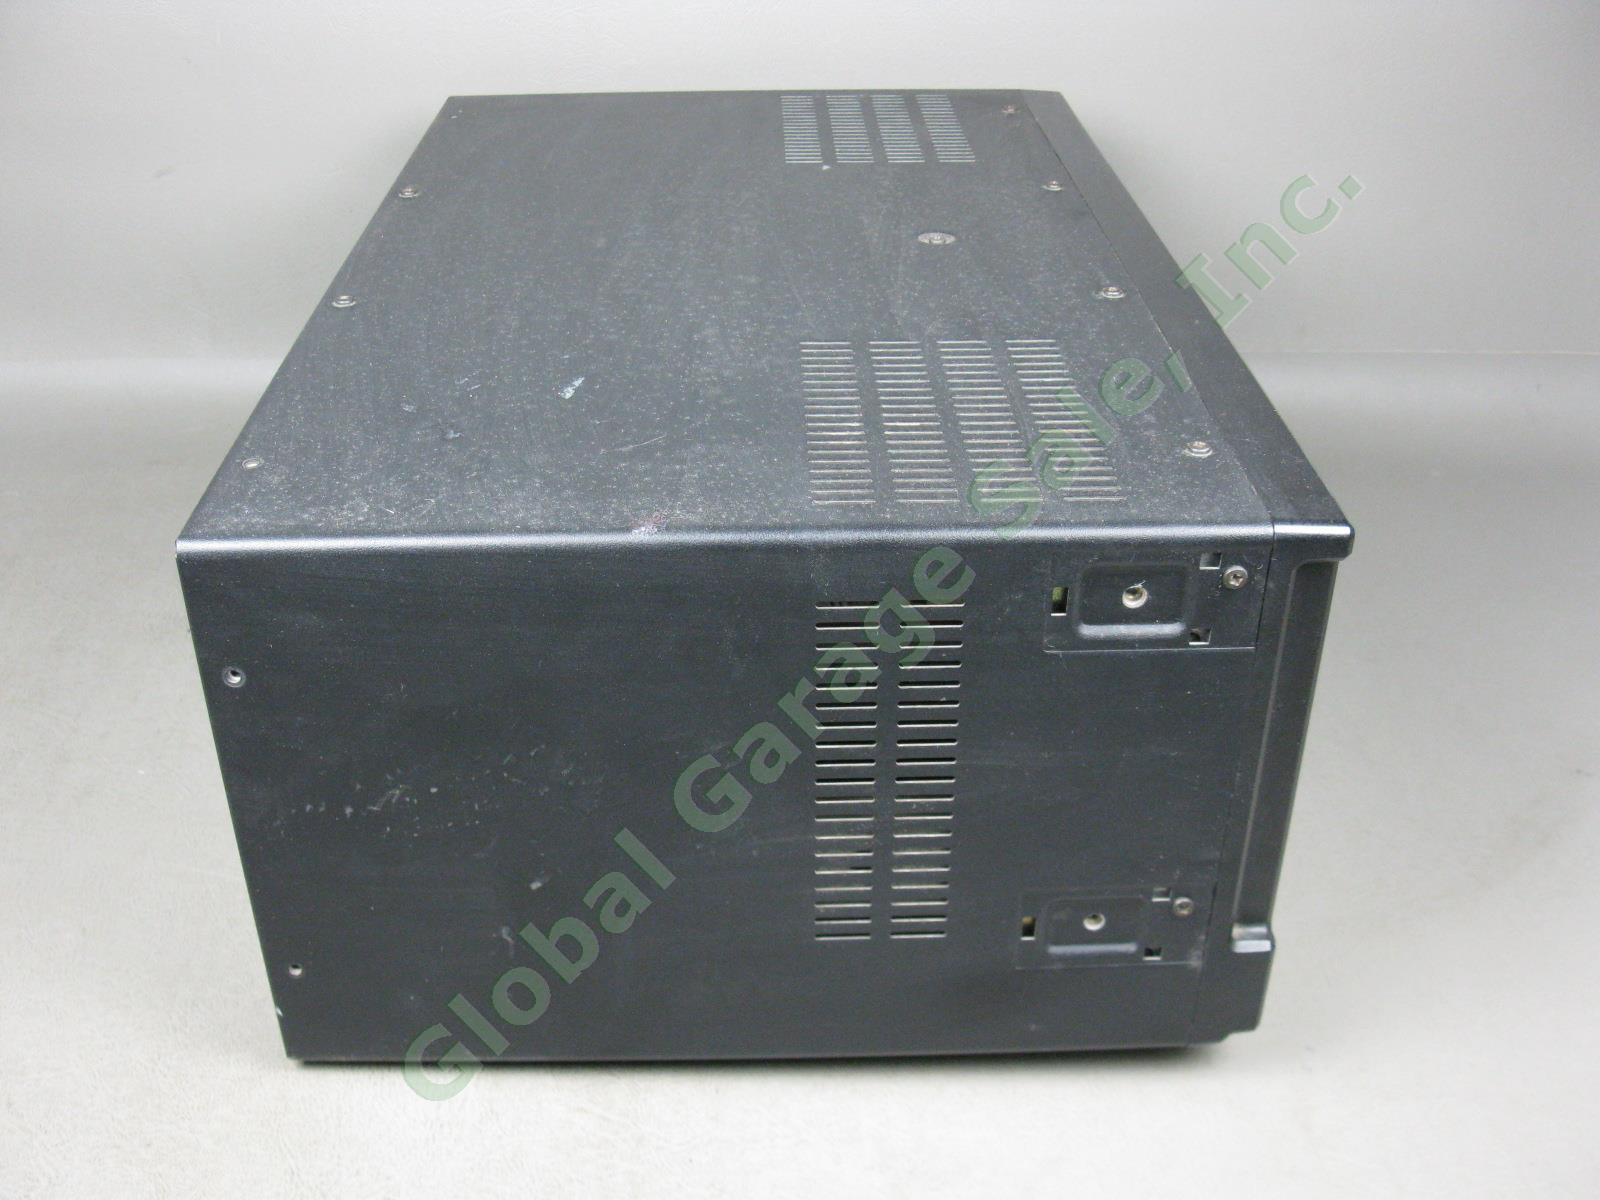 Panasonic RF-4800 FM-AM-SSB-CW 10-Band Shortwave Radio Communication Receiver NR 6